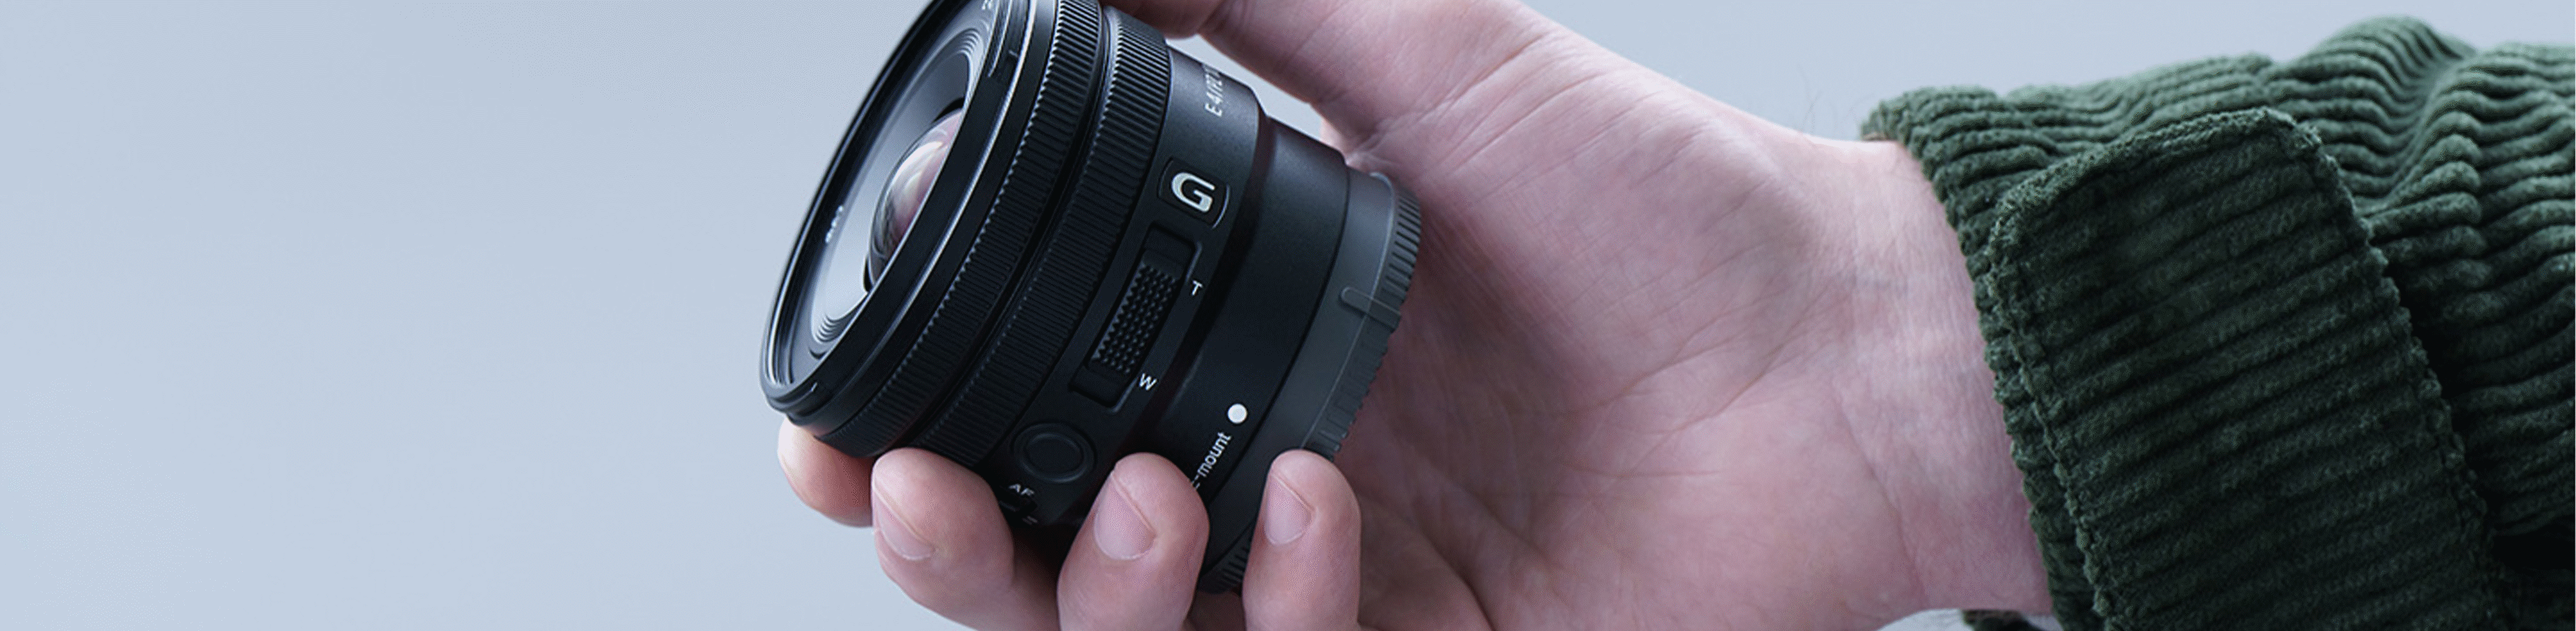 Image de la main d'une personne tenant le E PZ 10-20 mm F4 G, montrant que l'objectif est assez petit pour tenir dans la main